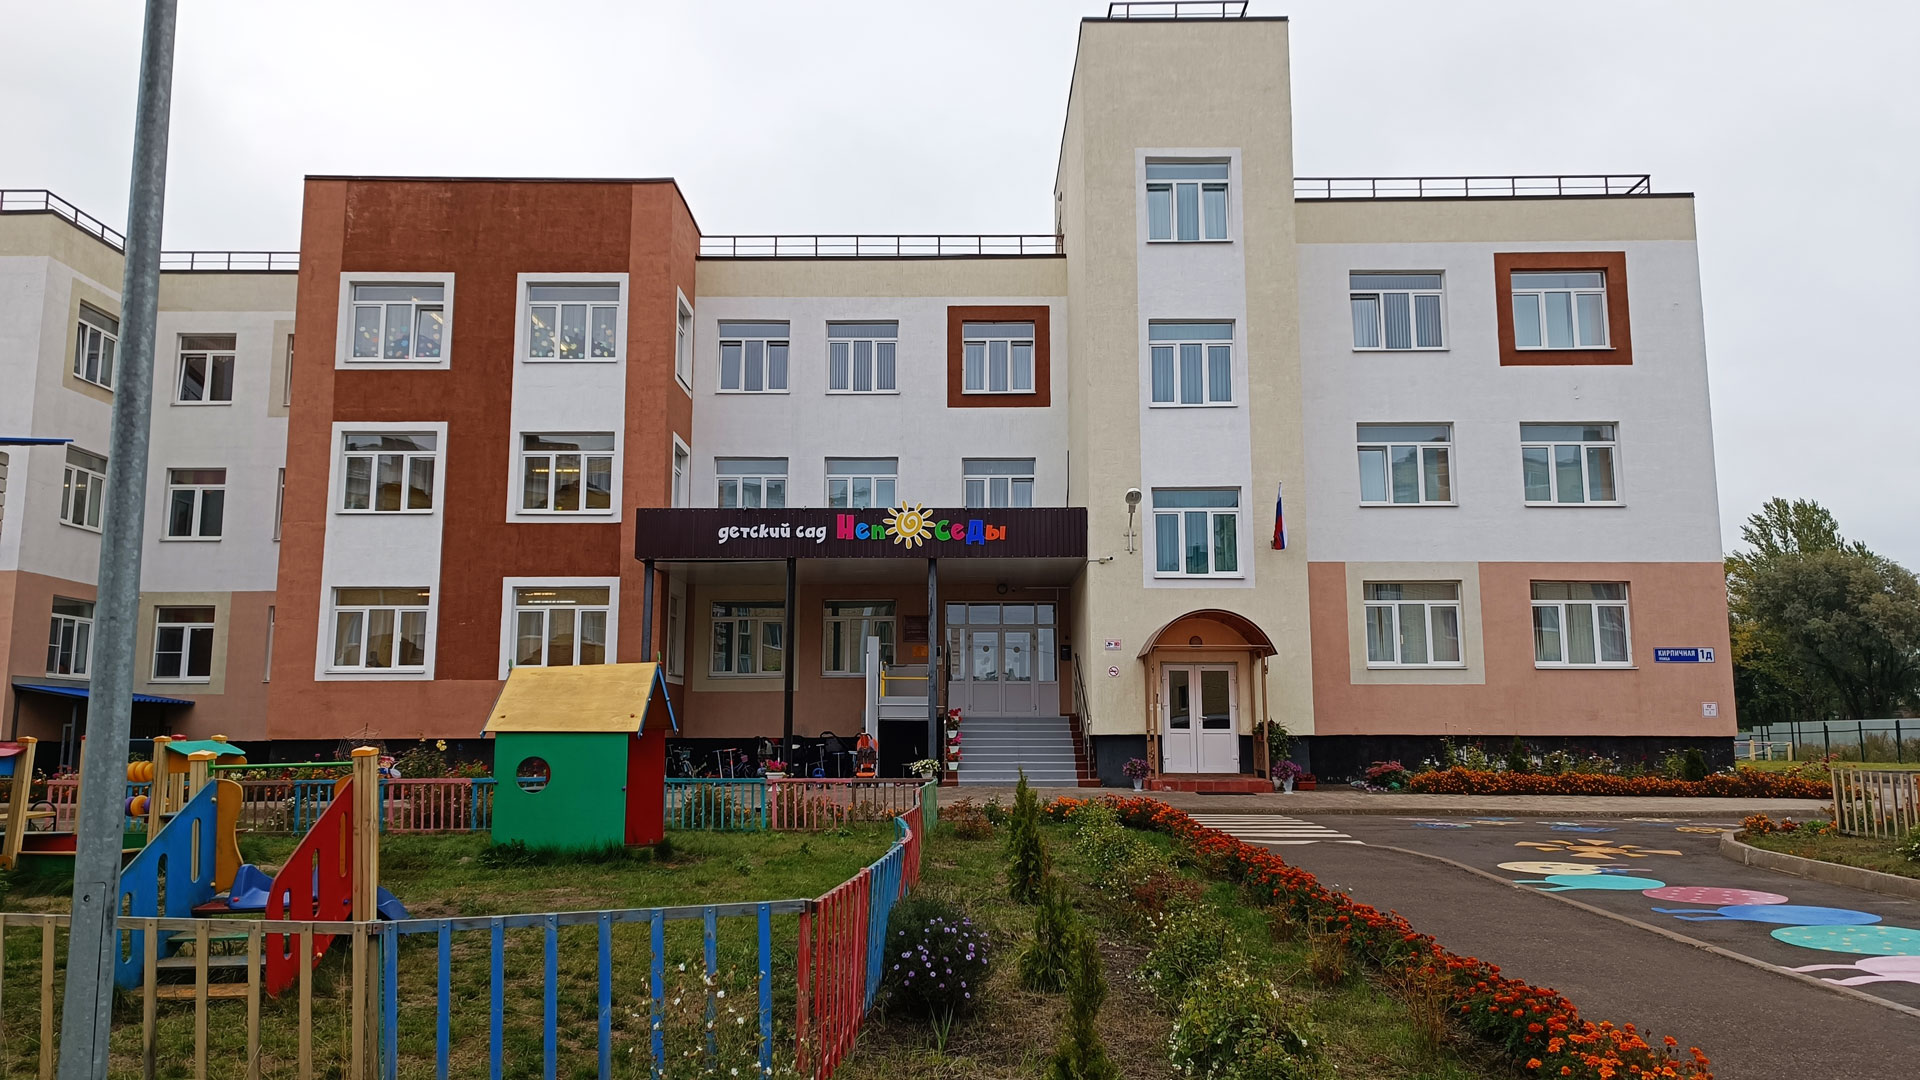 Детский сад 118 Ярославль: главный вход в здание садика.